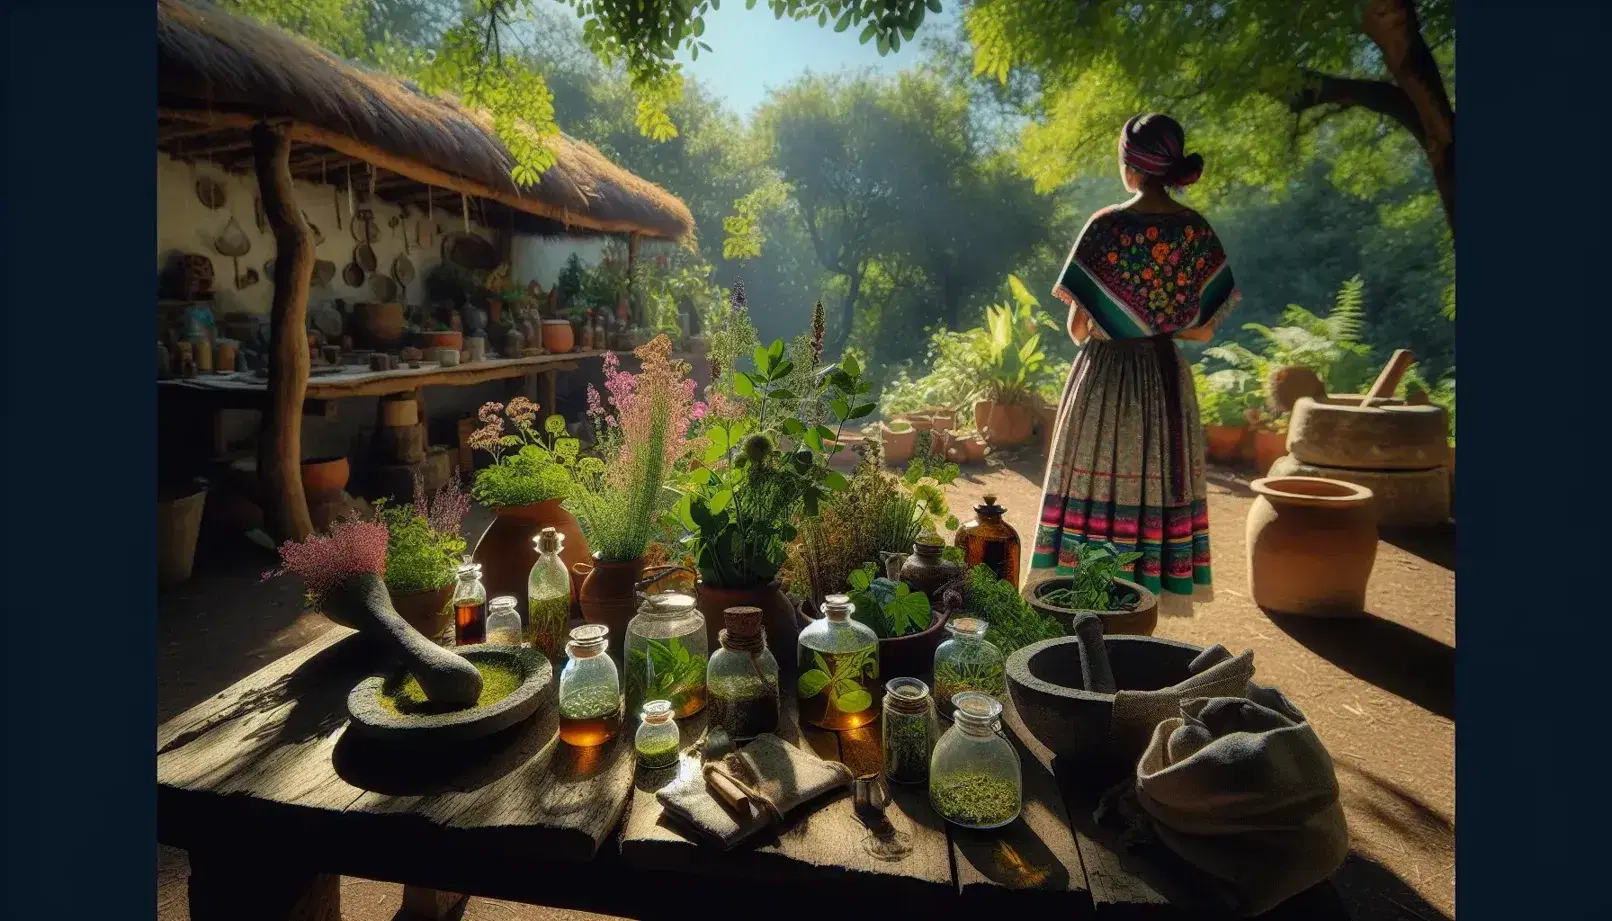 Persona en atuendo mexicano tradicional sostiene plantas medicinales en un jardín natural con macetas de barro, cestas tejidas y mesa rústica con frascos y mortero bajo árboles y cielo despejado.